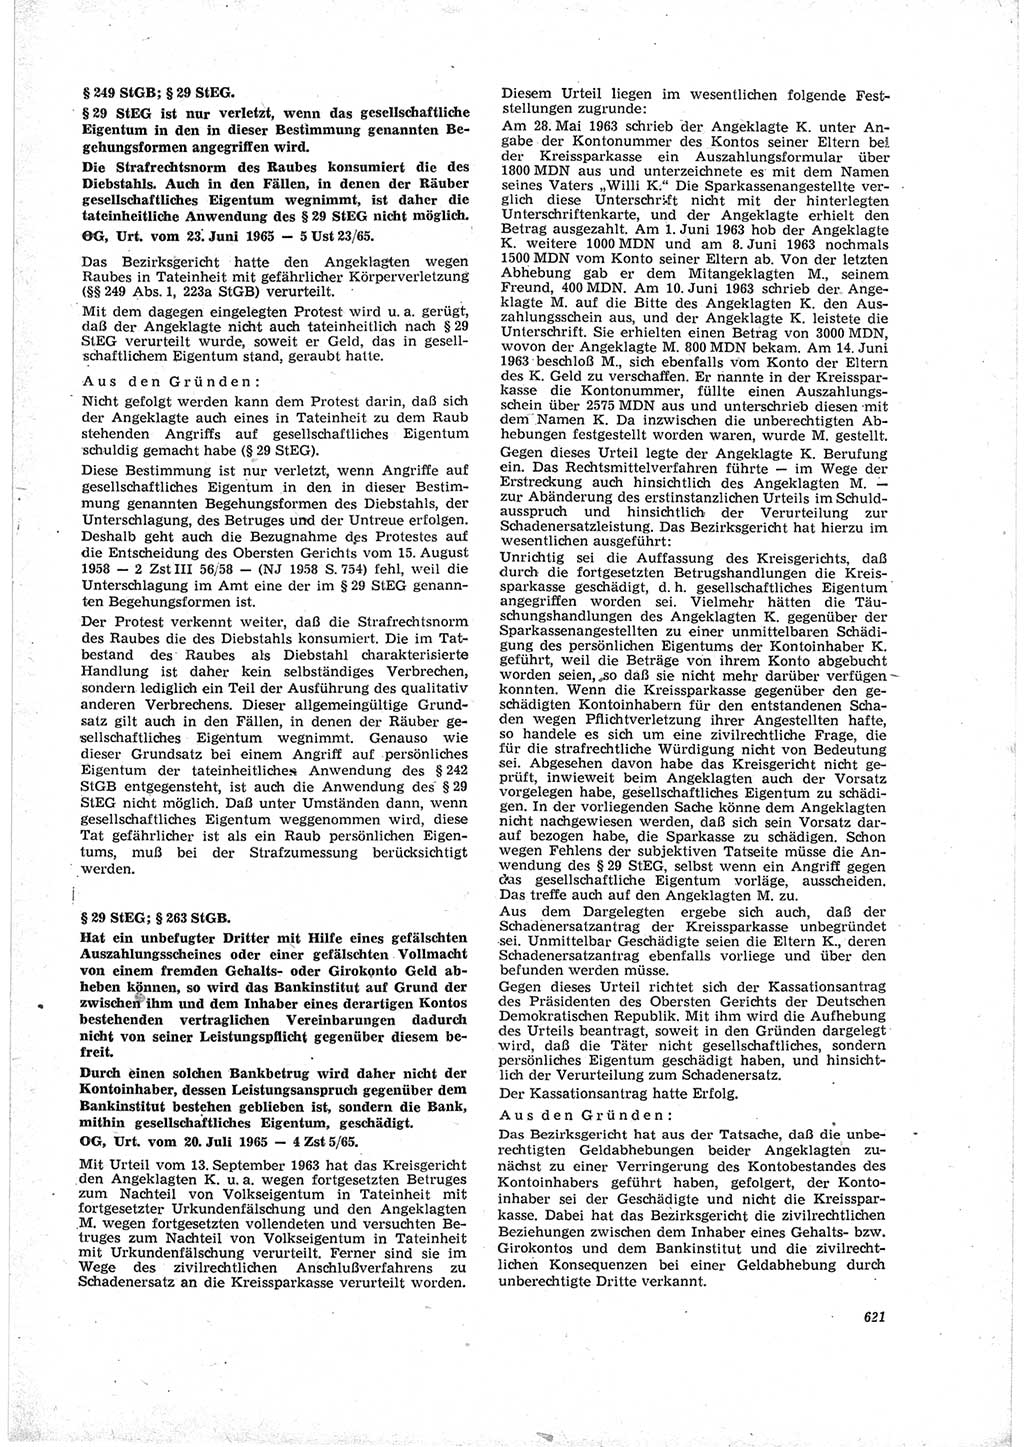 Neue Justiz (NJ), Zeitschrift für Recht und Rechtswissenschaft [Deutsche Demokratische Republik (DDR)], 19. Jahrgang 1965, Seite 621 (NJ DDR 1965, S. 621)